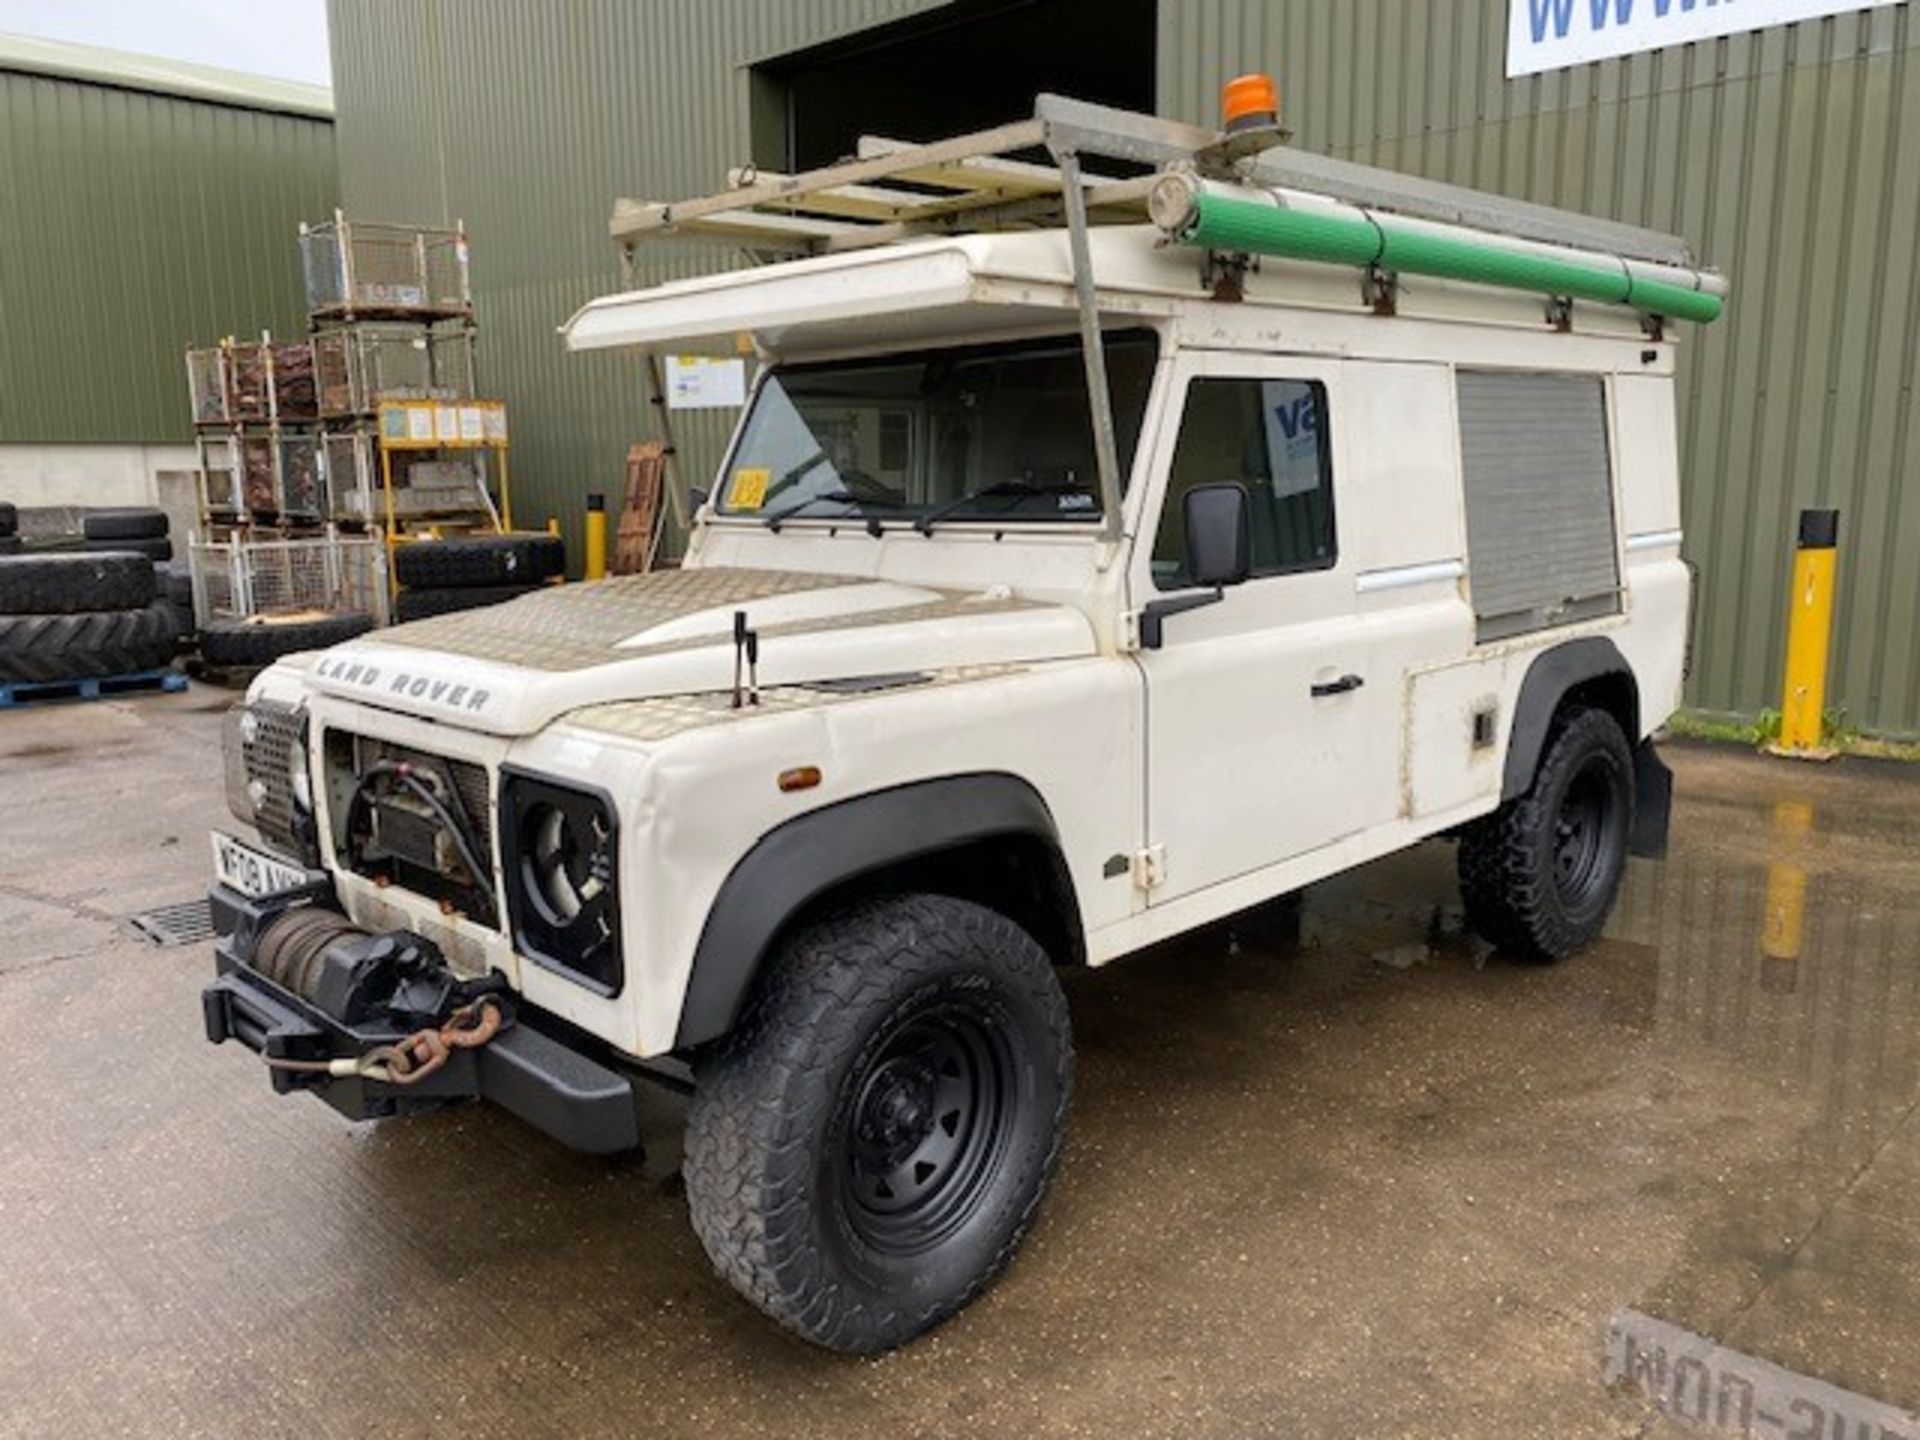 Land Rover Defender 110 2.4 Utility (mobile workshop) - Image 9 of 64